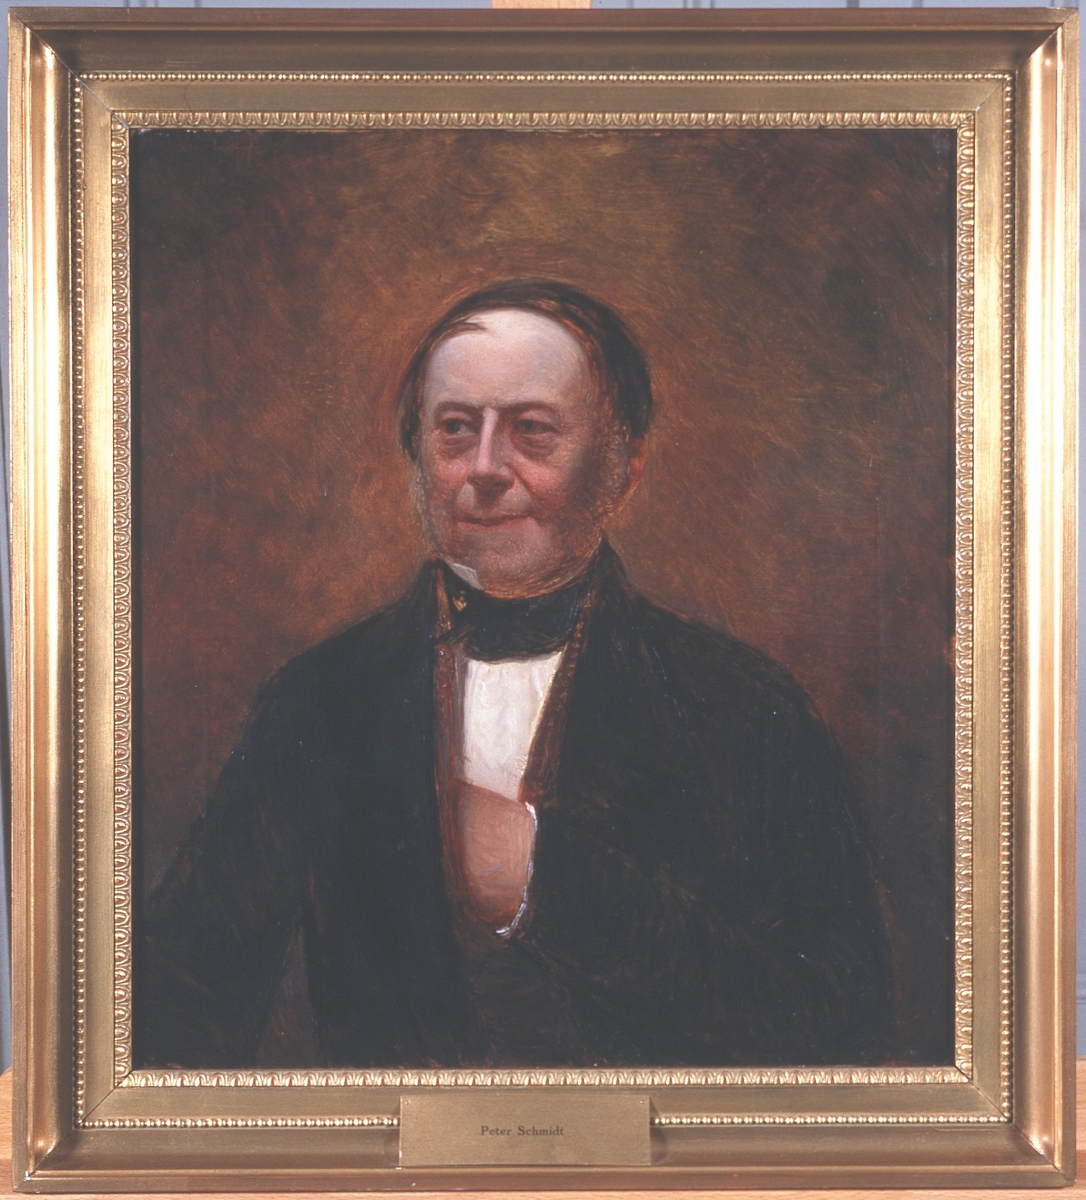 Portrett av Peter Schmidt. Mørk drakt, rødbrun vest, svart halsbind. Rødbrun bakgrunn.